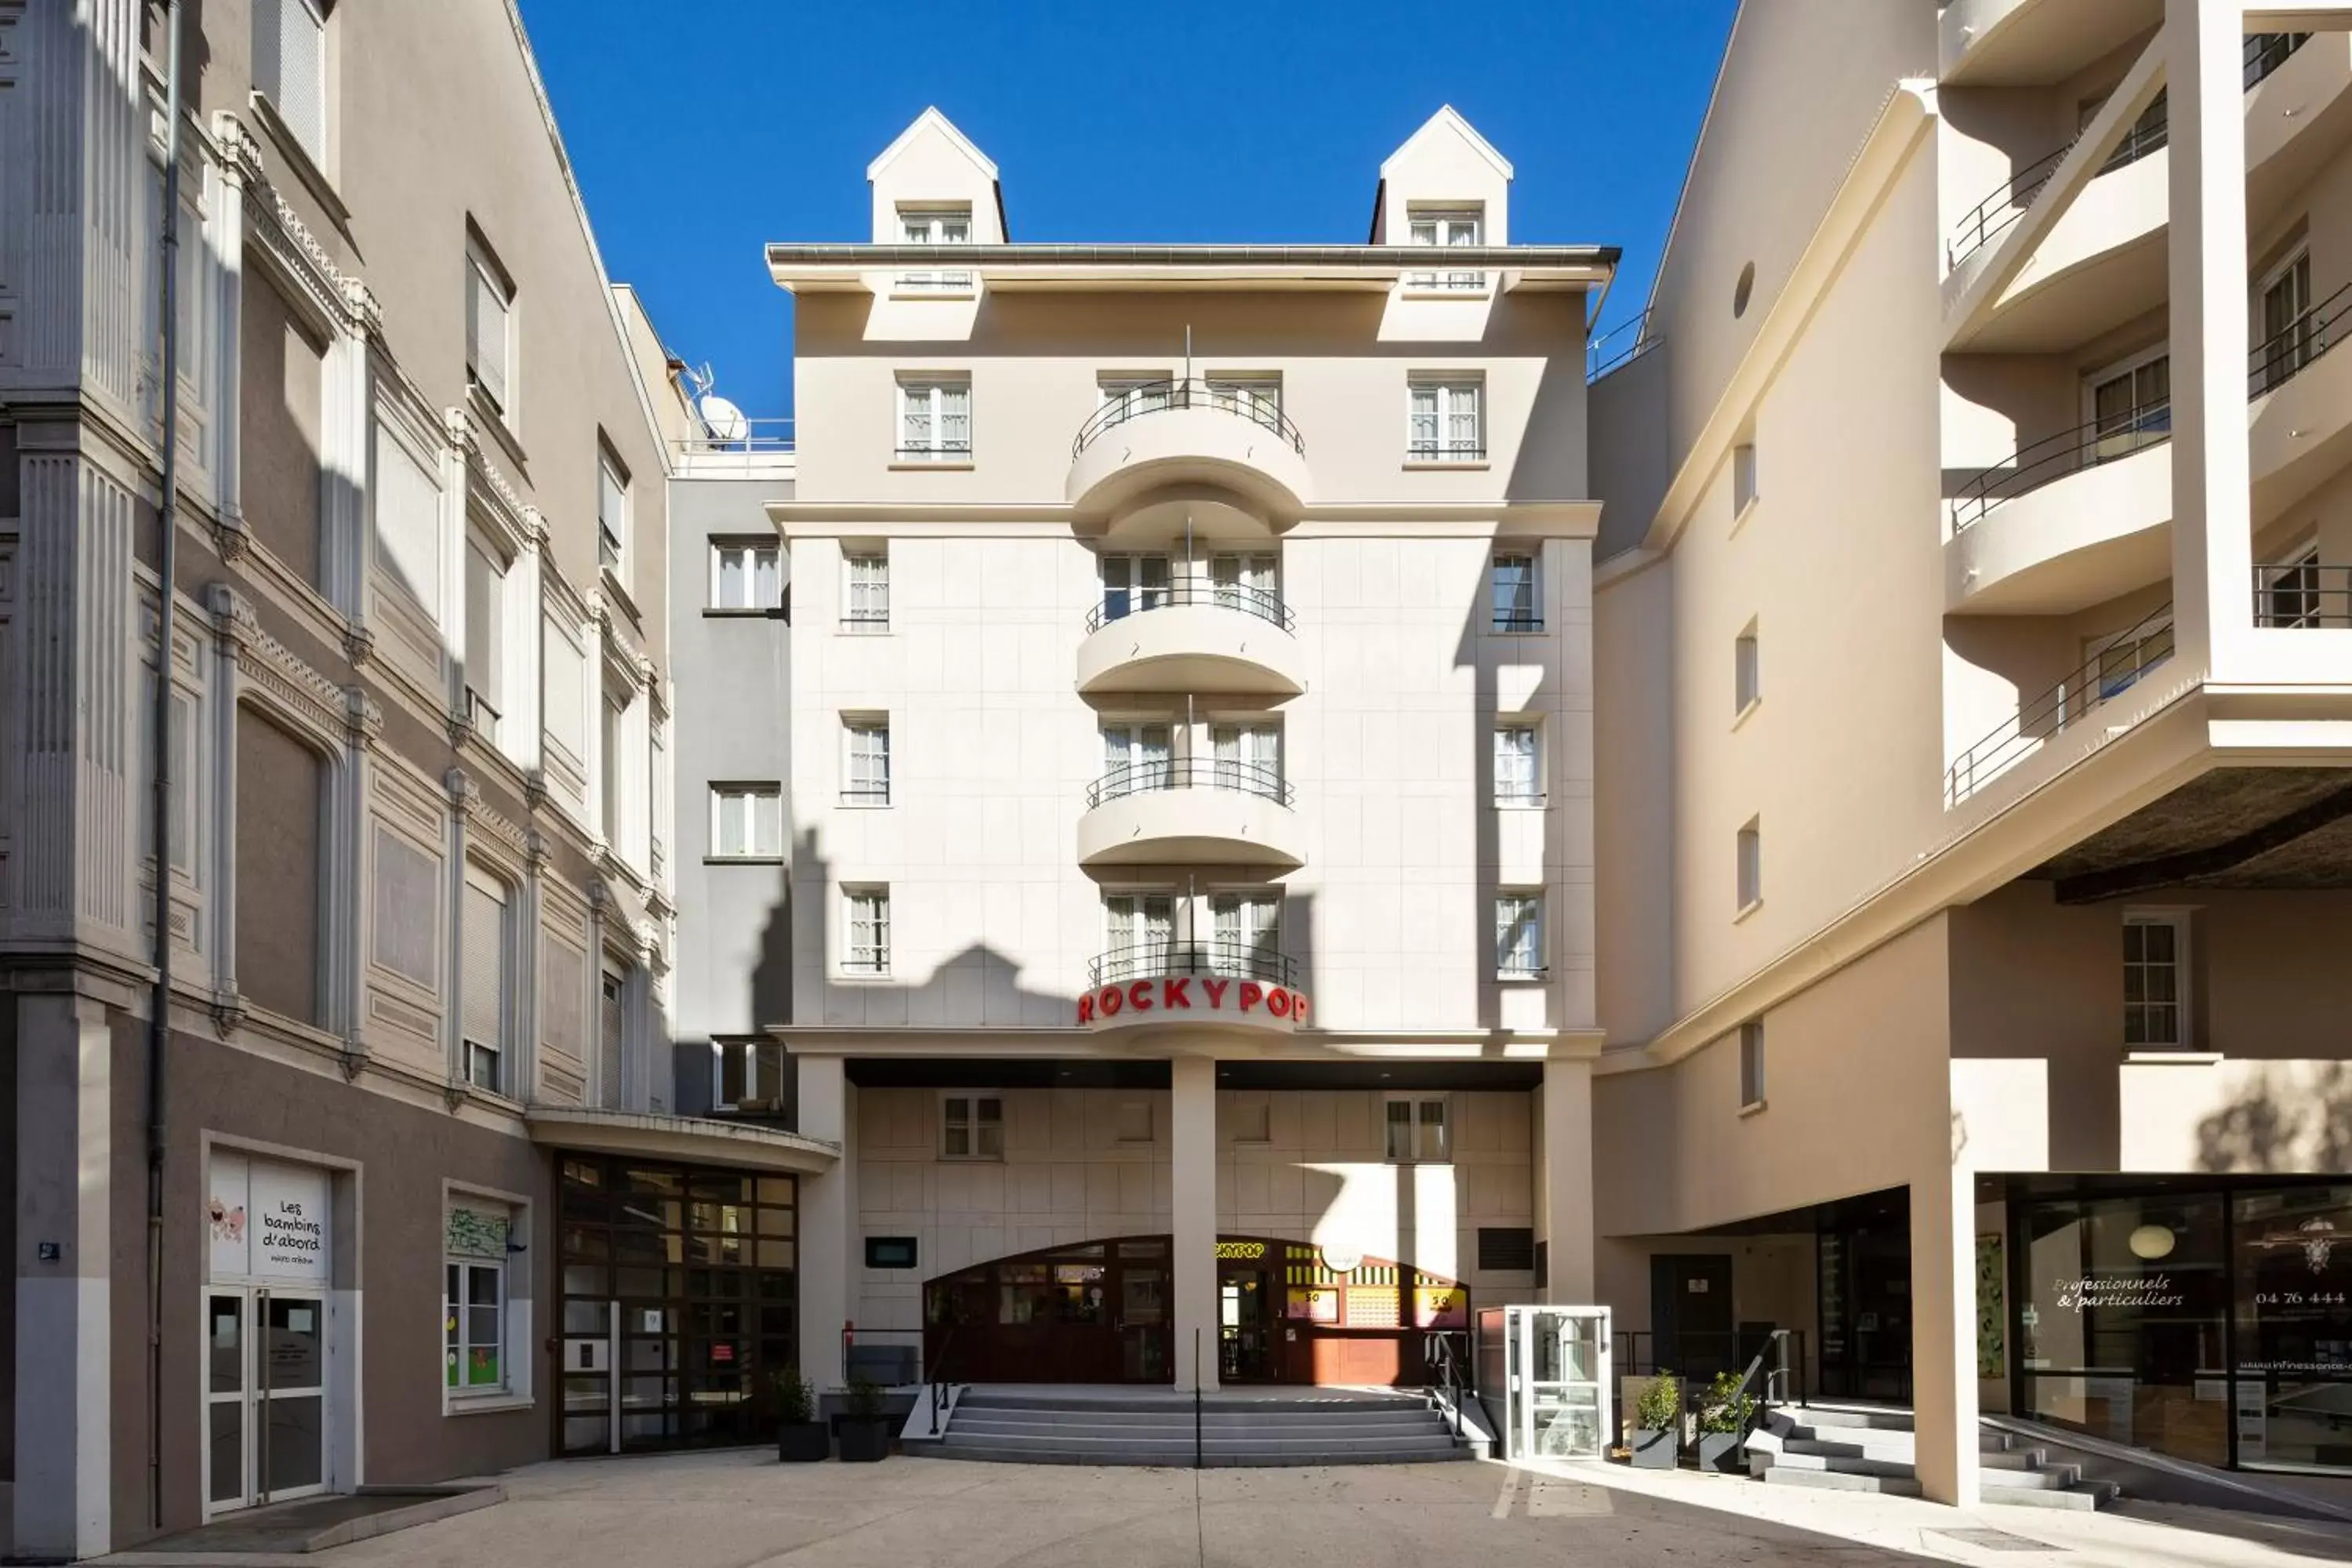 Facade/entrance, Property Building in RockyPop Grenoble Hotel